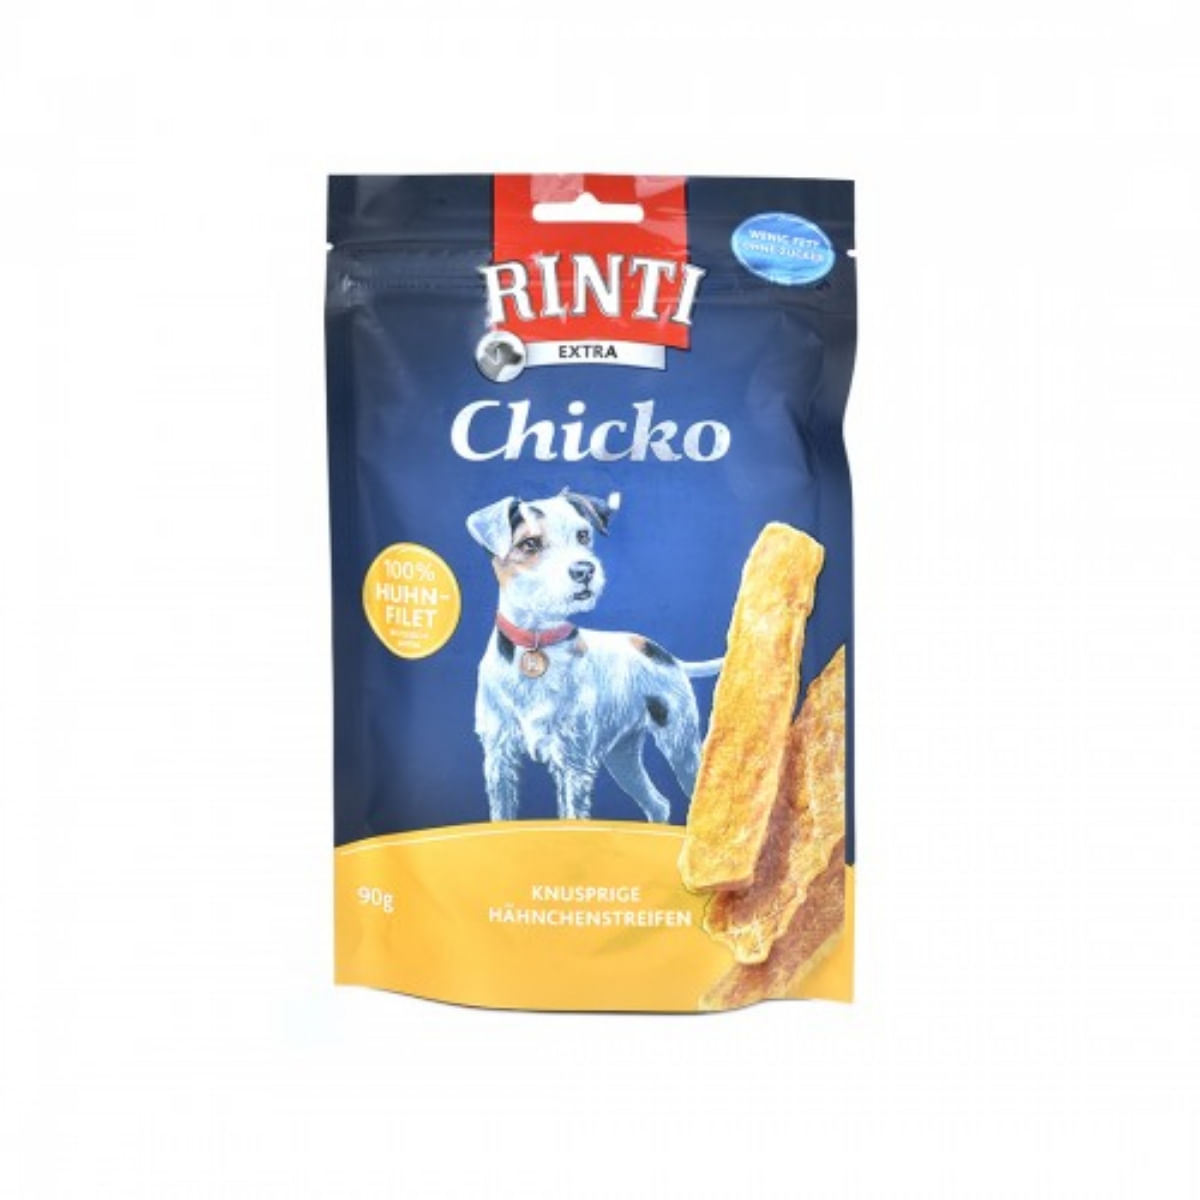 RINTI Chicko, XS-XL, Pui, punguță recompense fără cereale câini, deshidratat, 90g